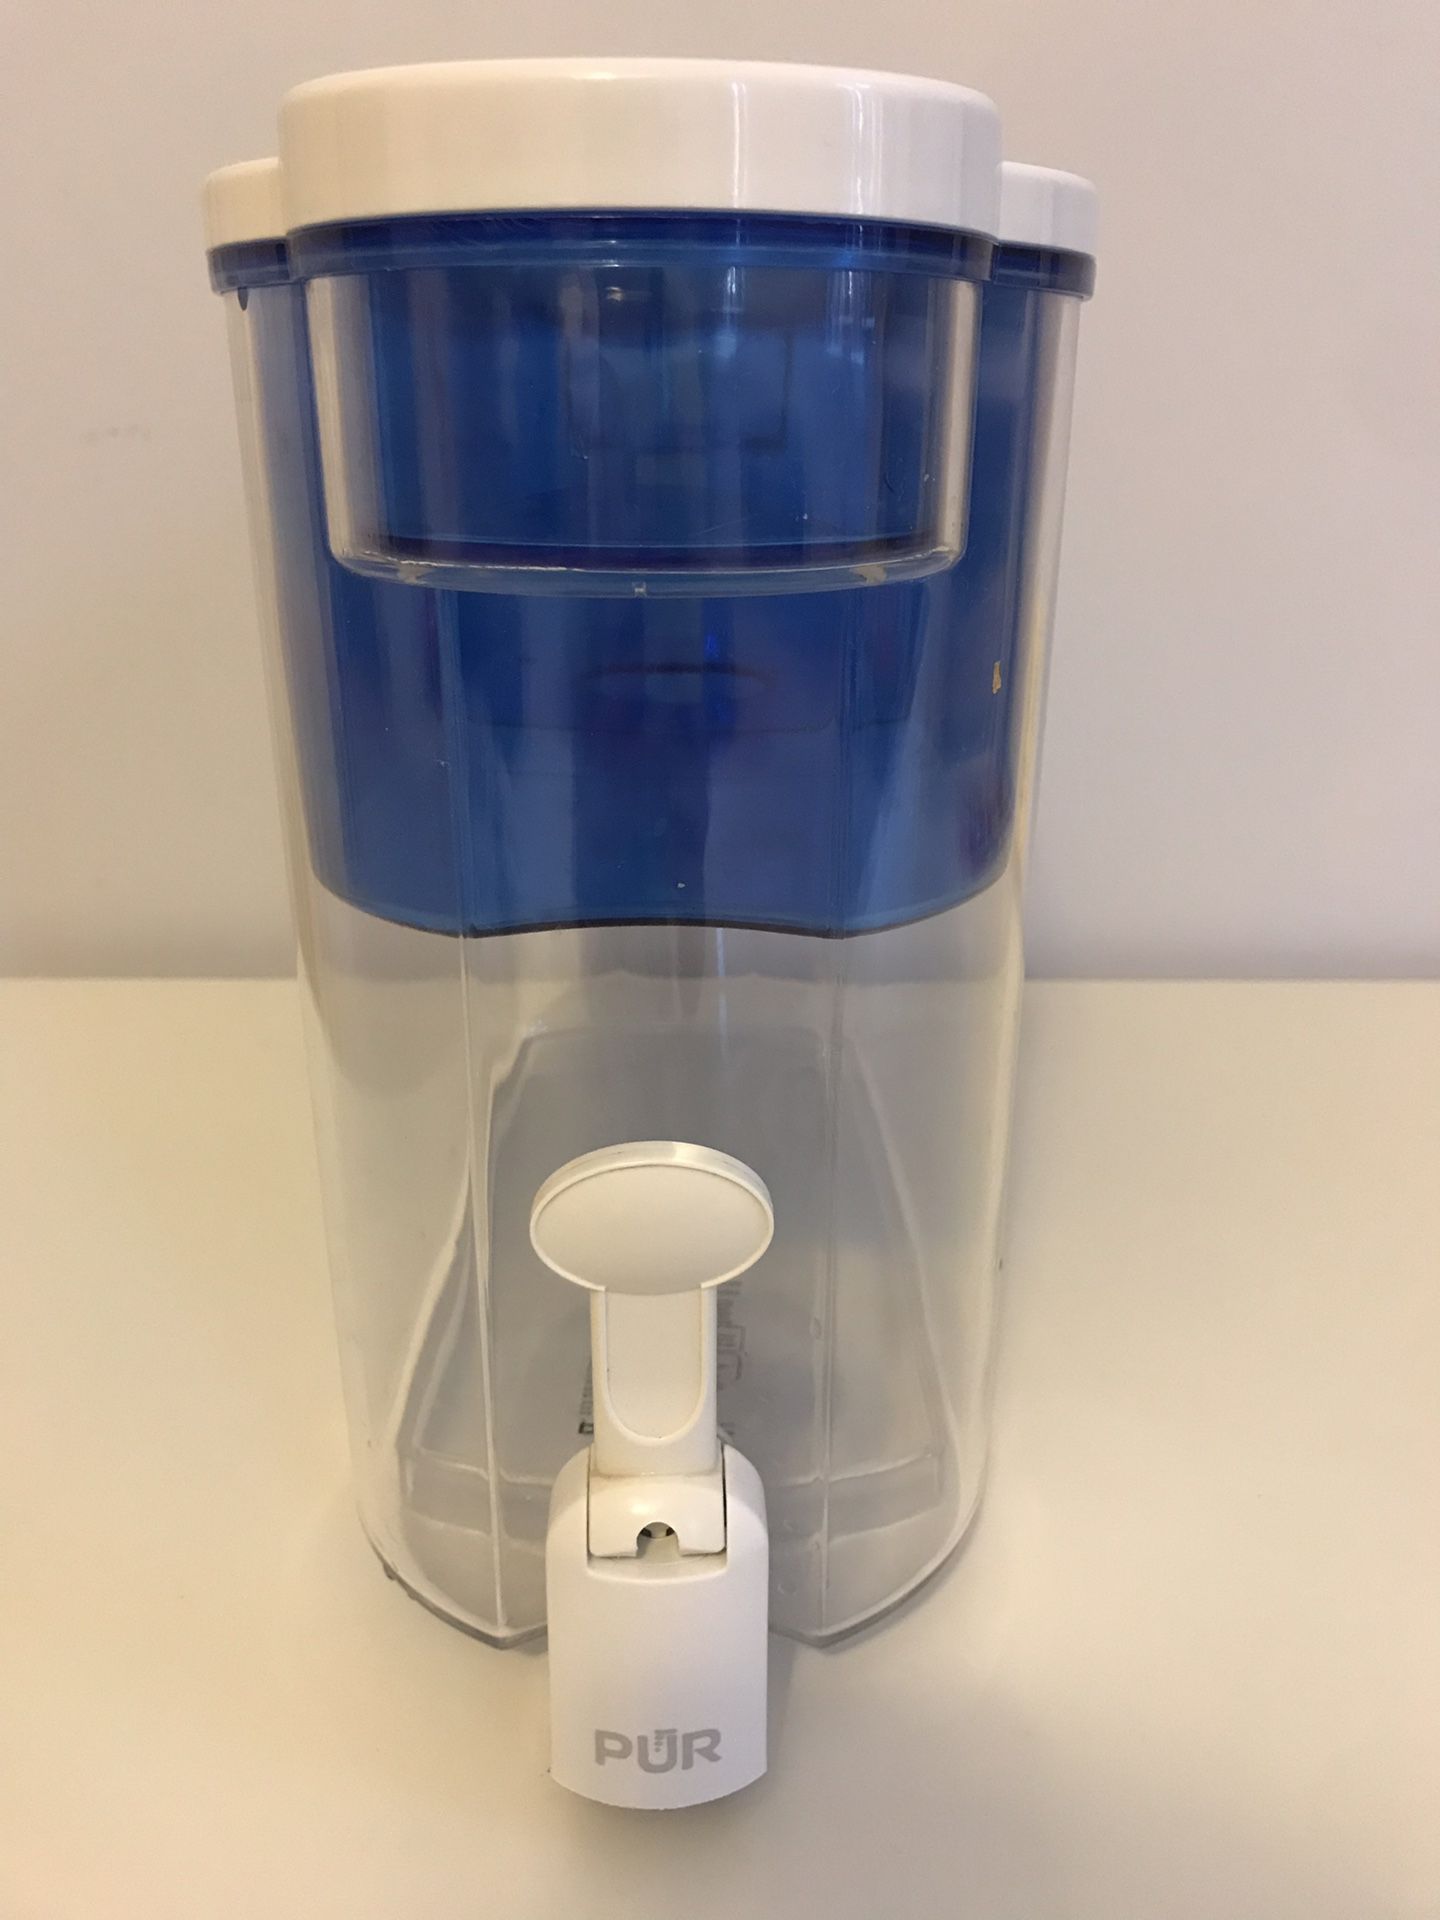 PUR water filter dispenser